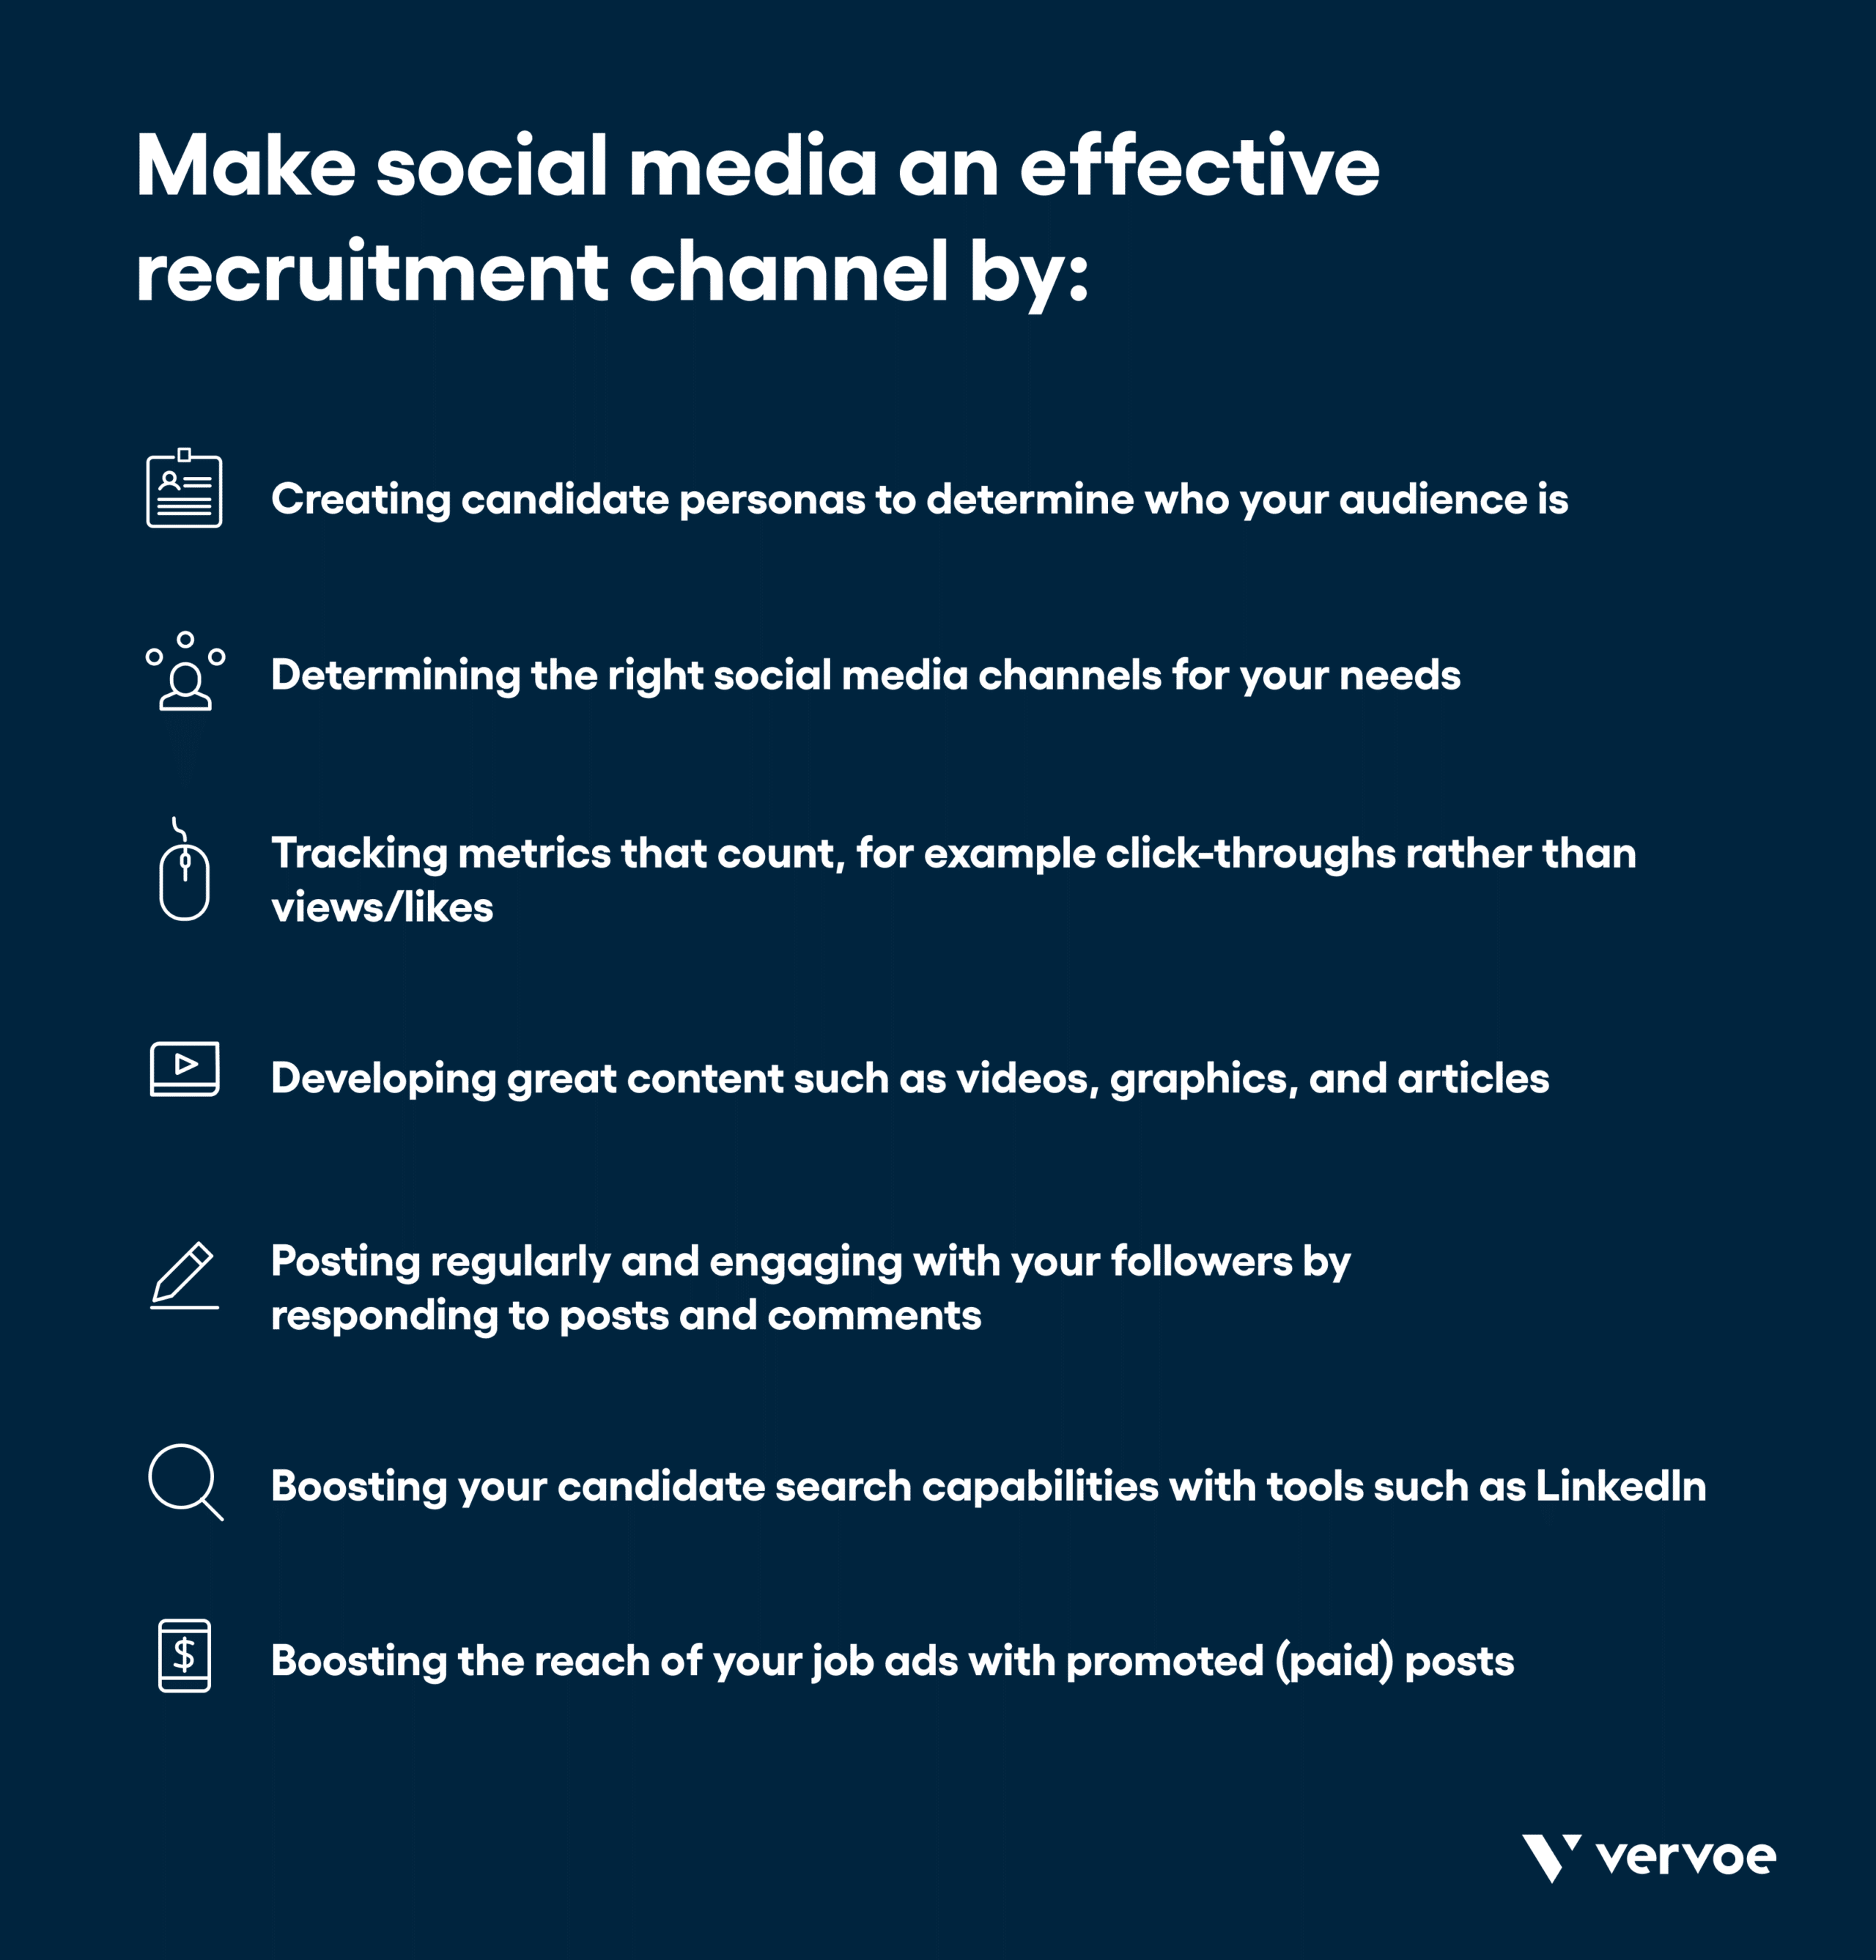 信息图显示如何使社会媒体成为一个有效的招聘渠道